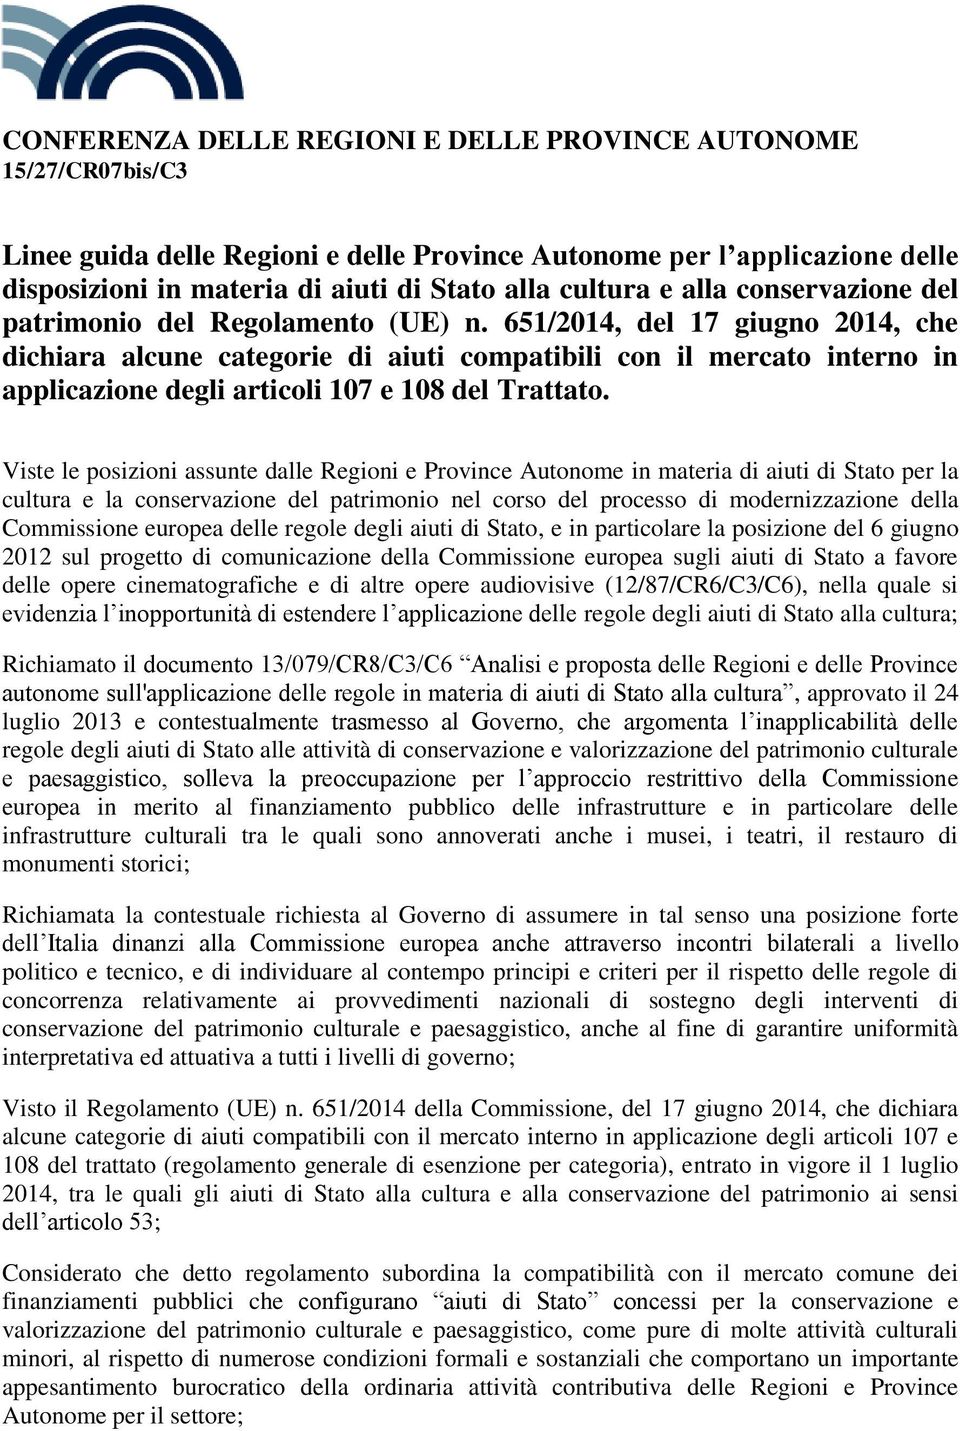 651/2014, del 17 giugno 2014, che dichiara alcune categorie di aiuti compatibili con il mercato interno in applicazione degli articoli 107 e 108 del Trattato.